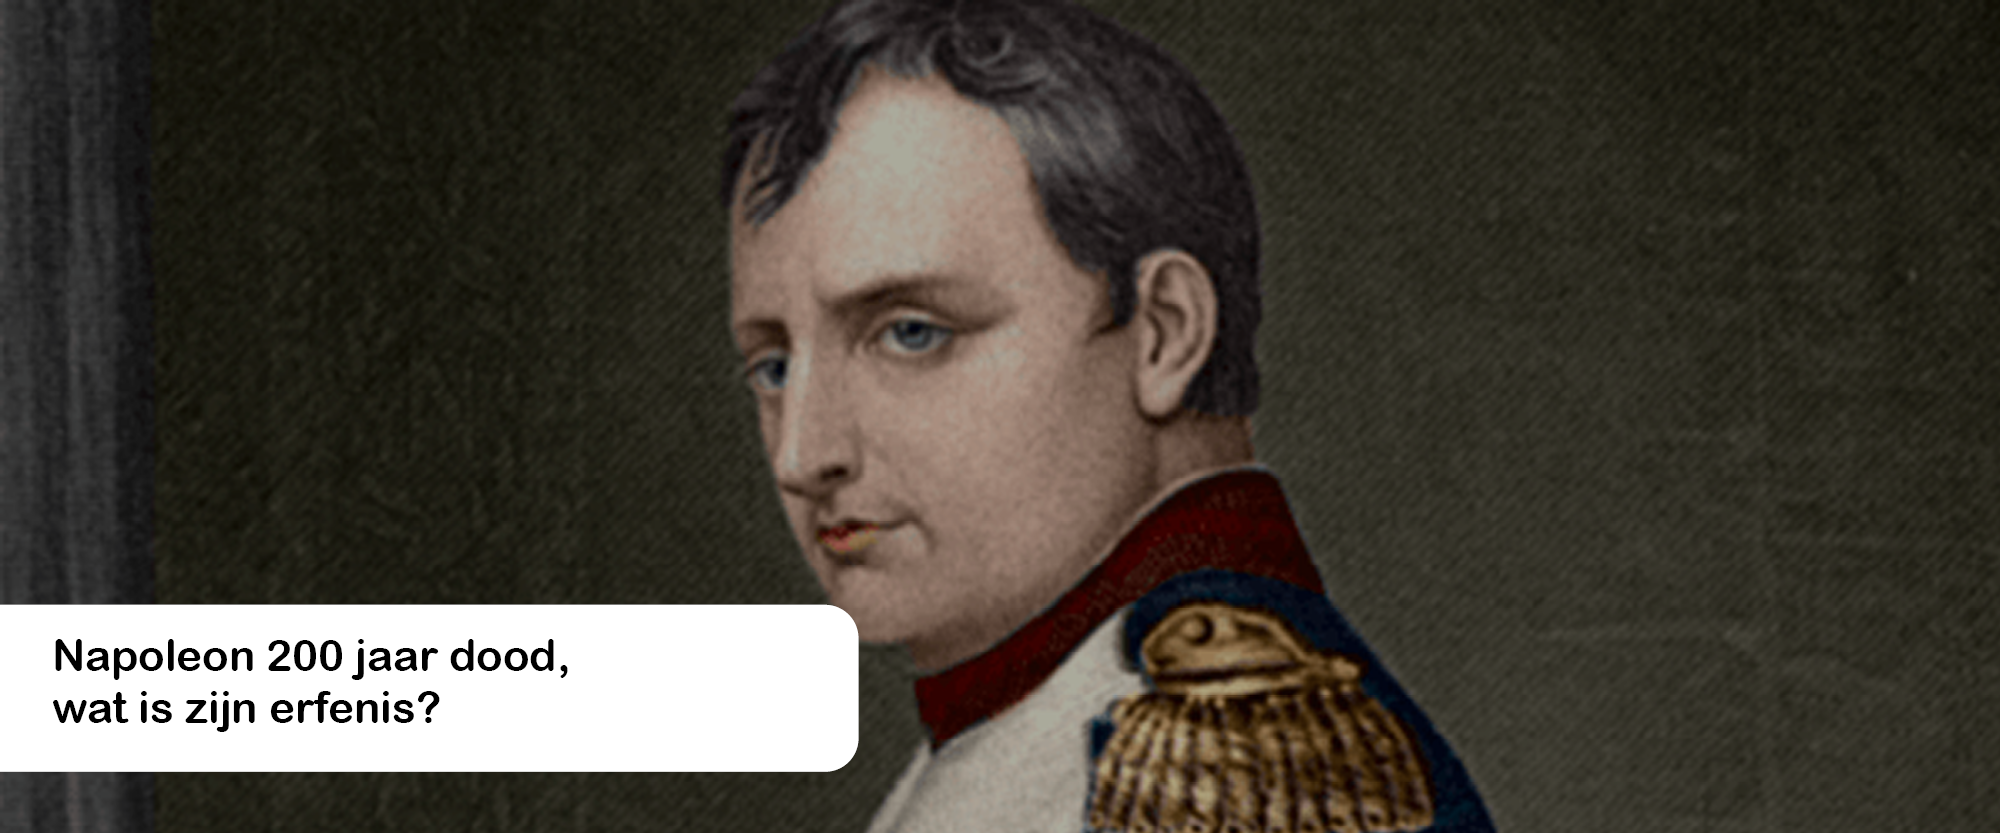 Napoleon 200 jaar dood, wat is zijn erfenis?